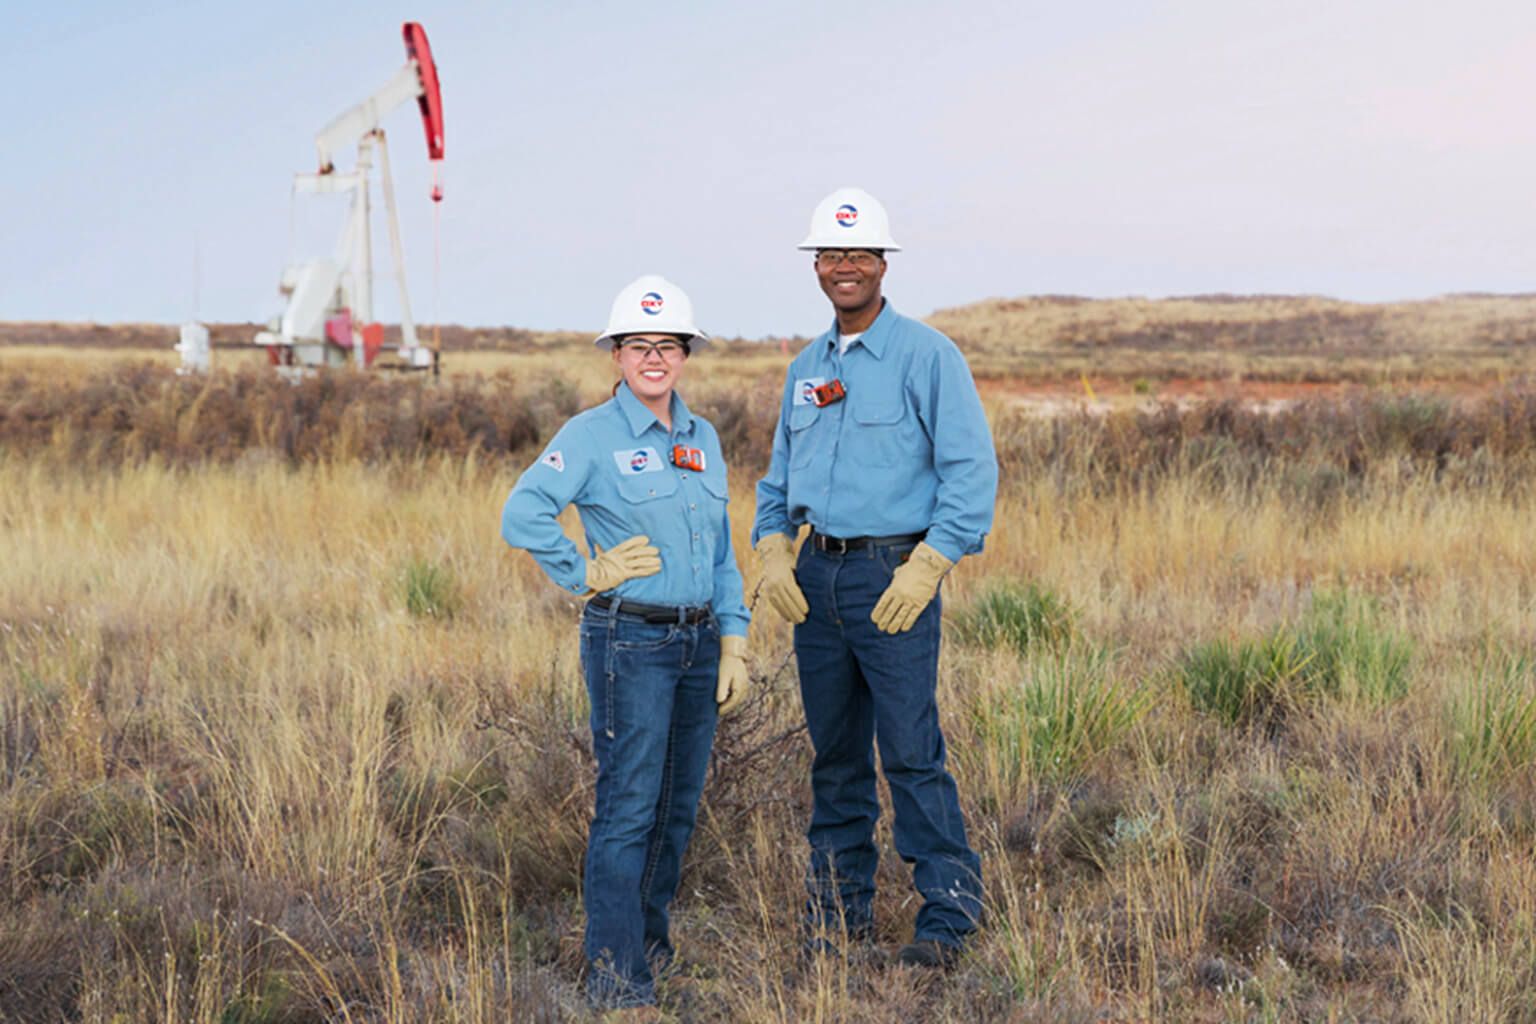 Two people wearing work uniform standing in field